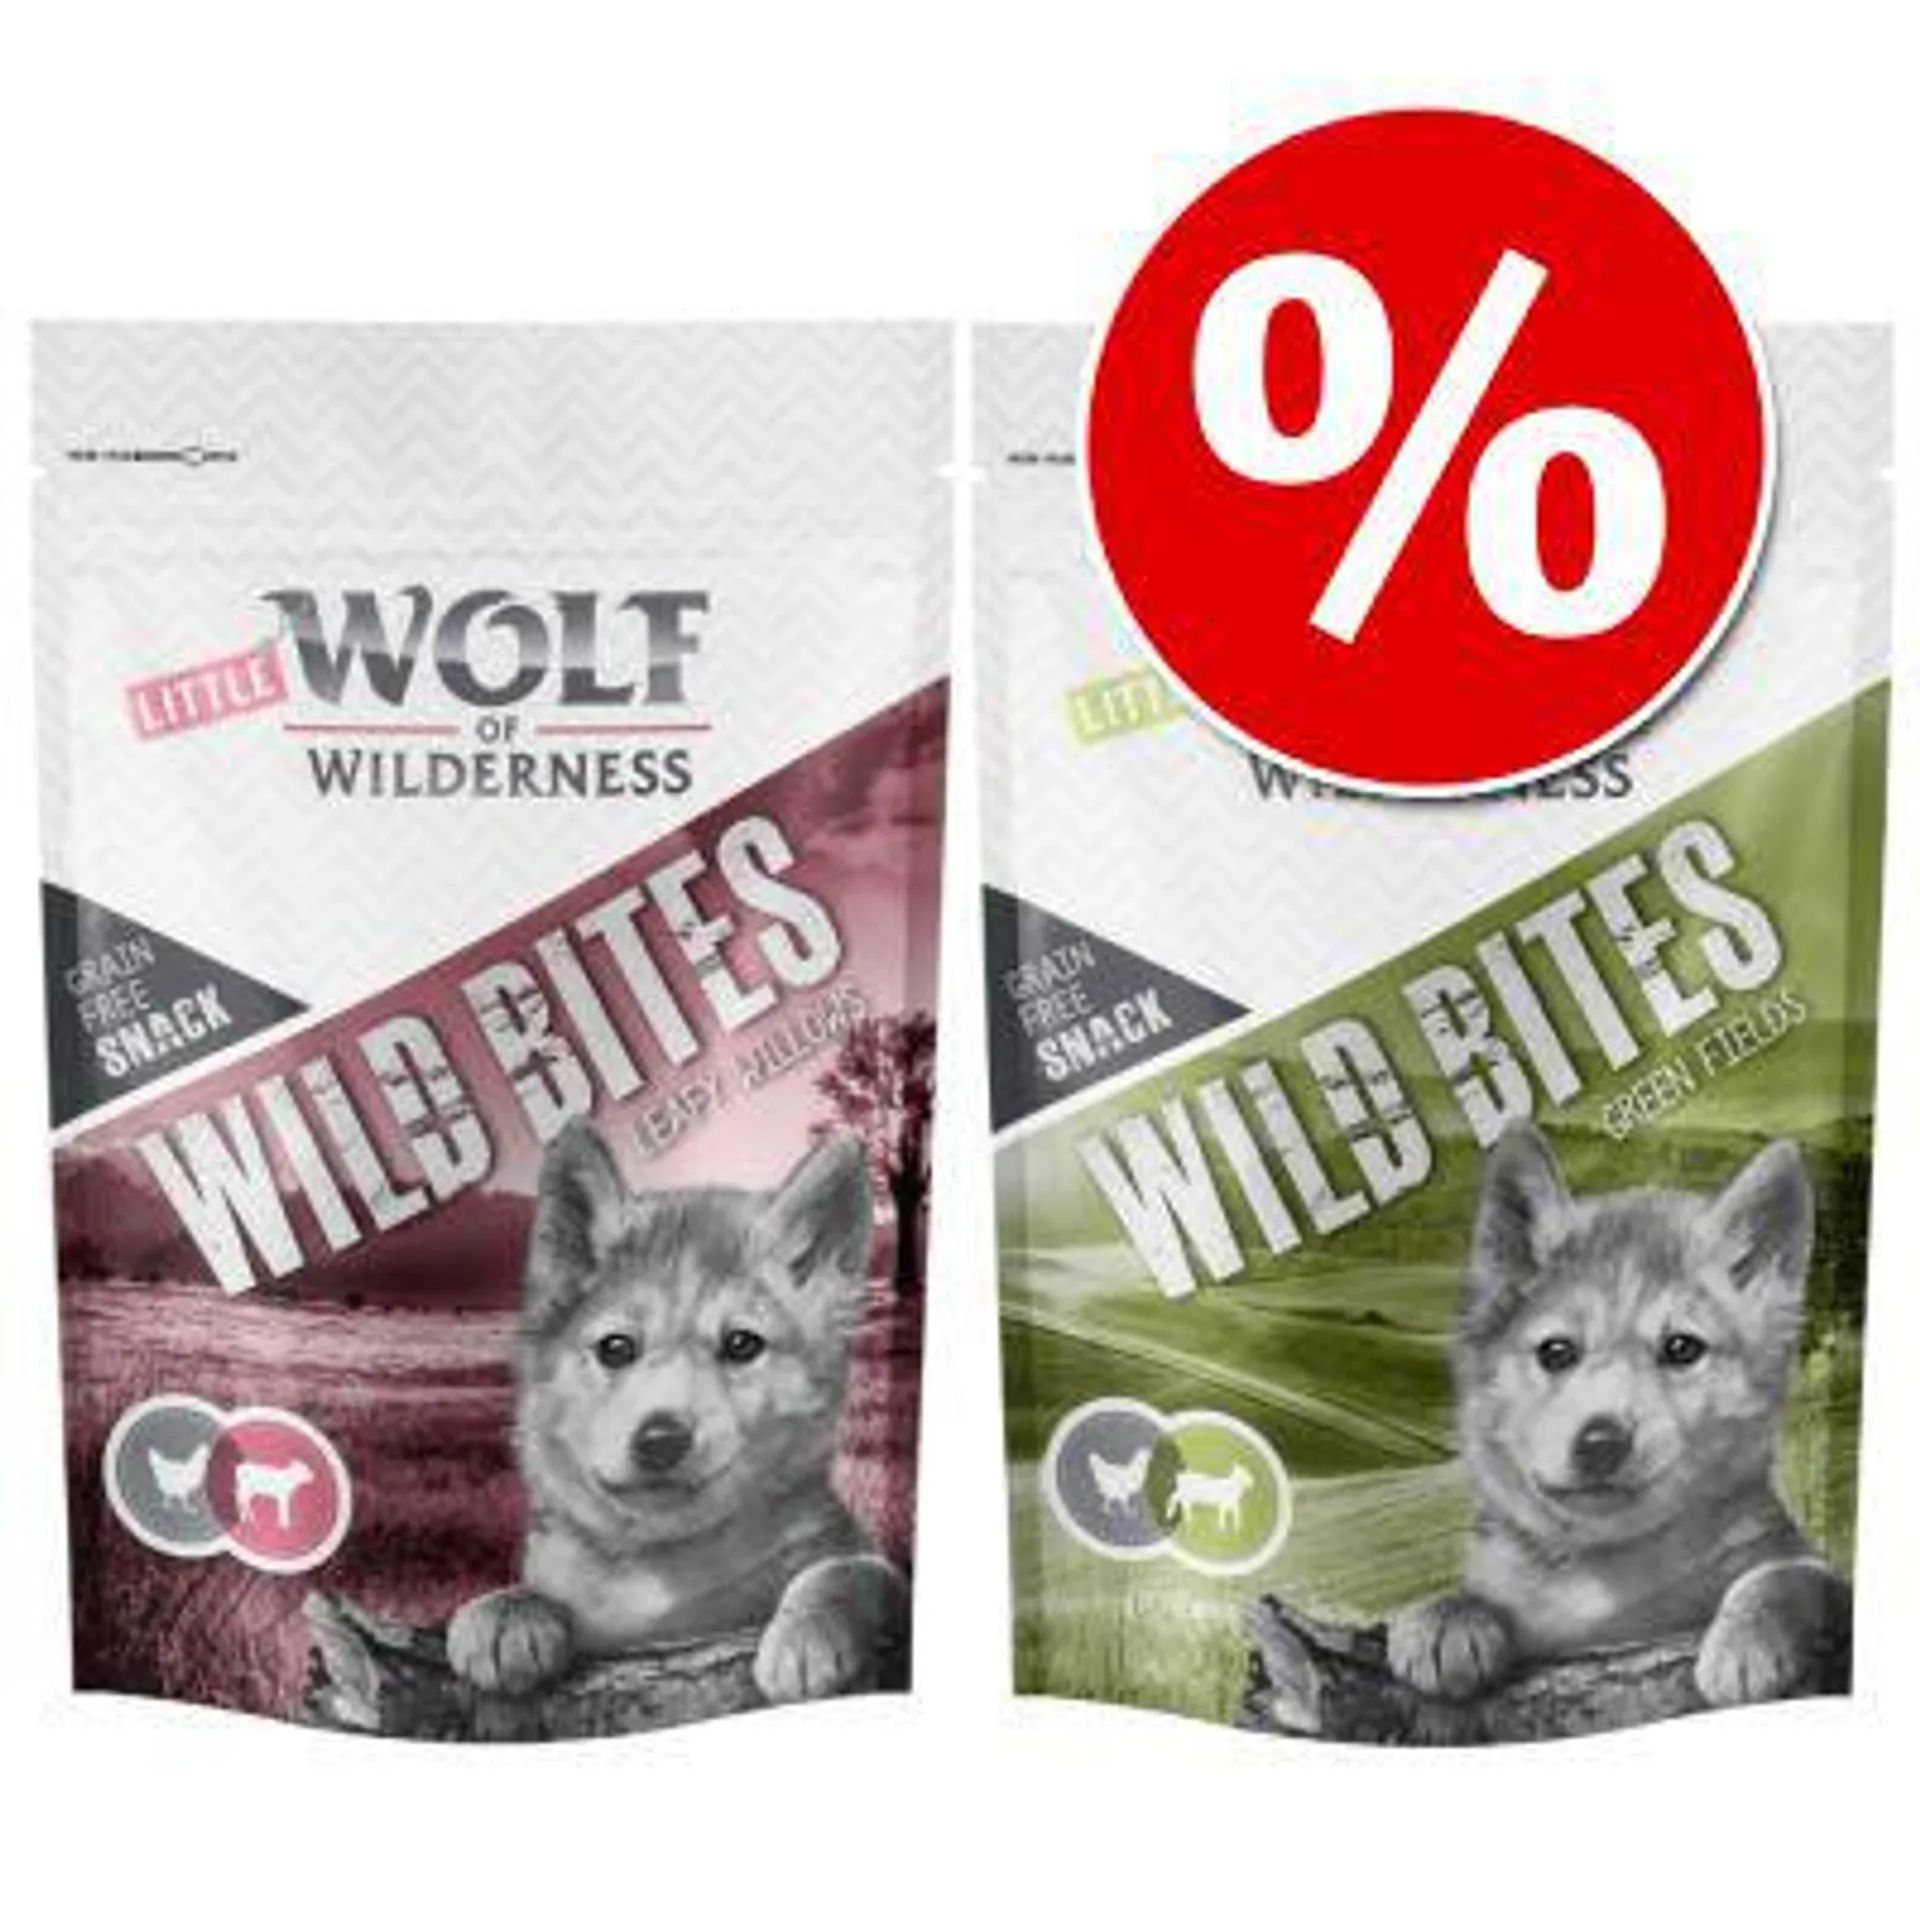 2 x 180g Little Wolf of Wilderness Wild Bites Junior Dog Snacks - Special Price!*